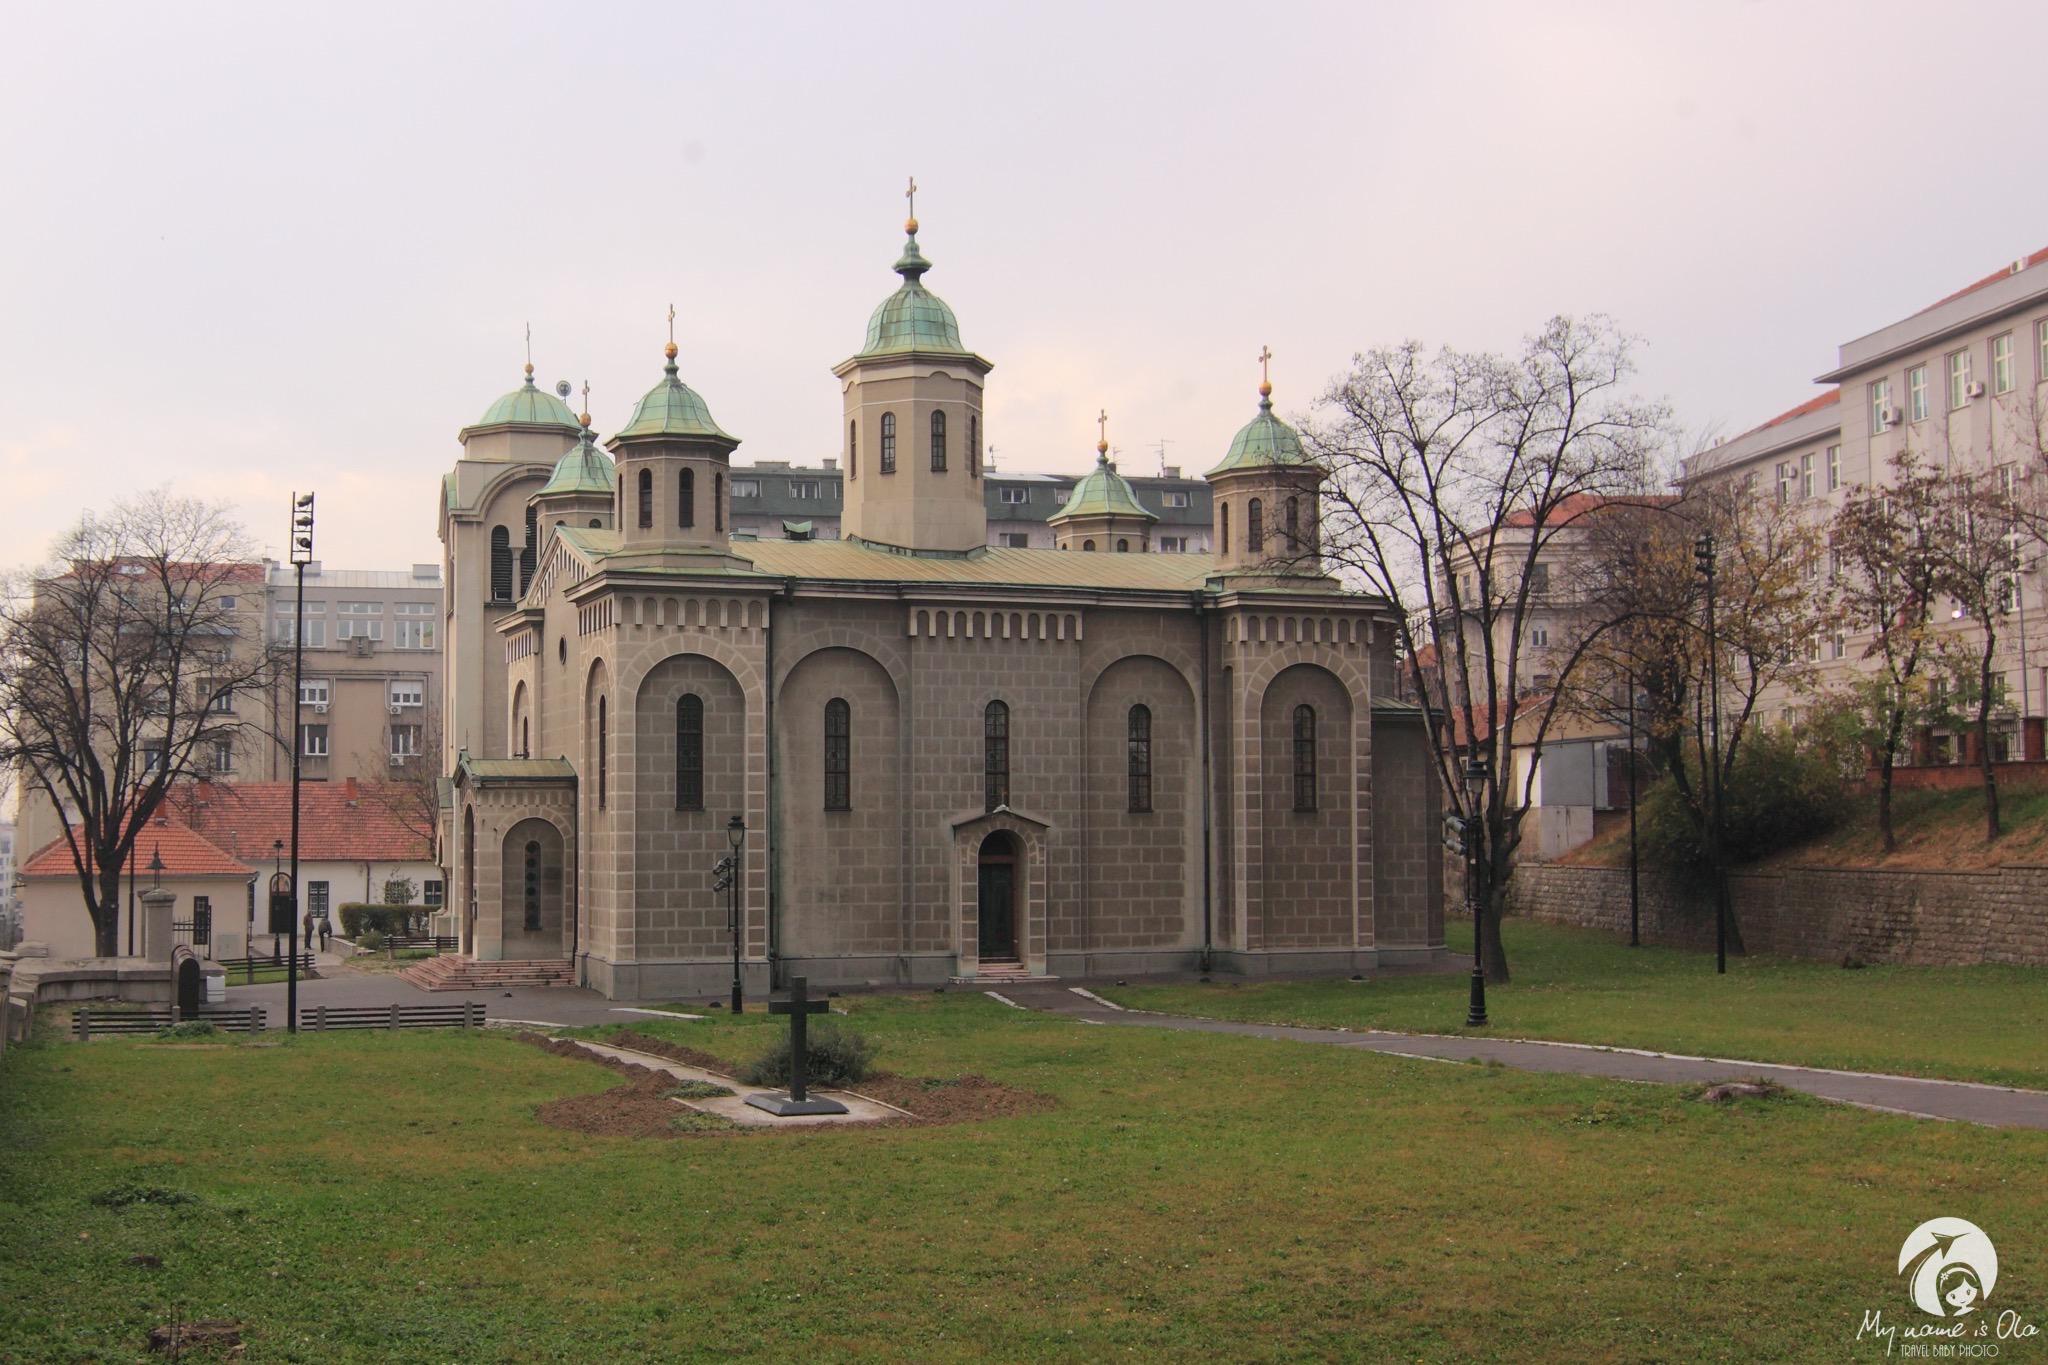 Belgrad, Serbia